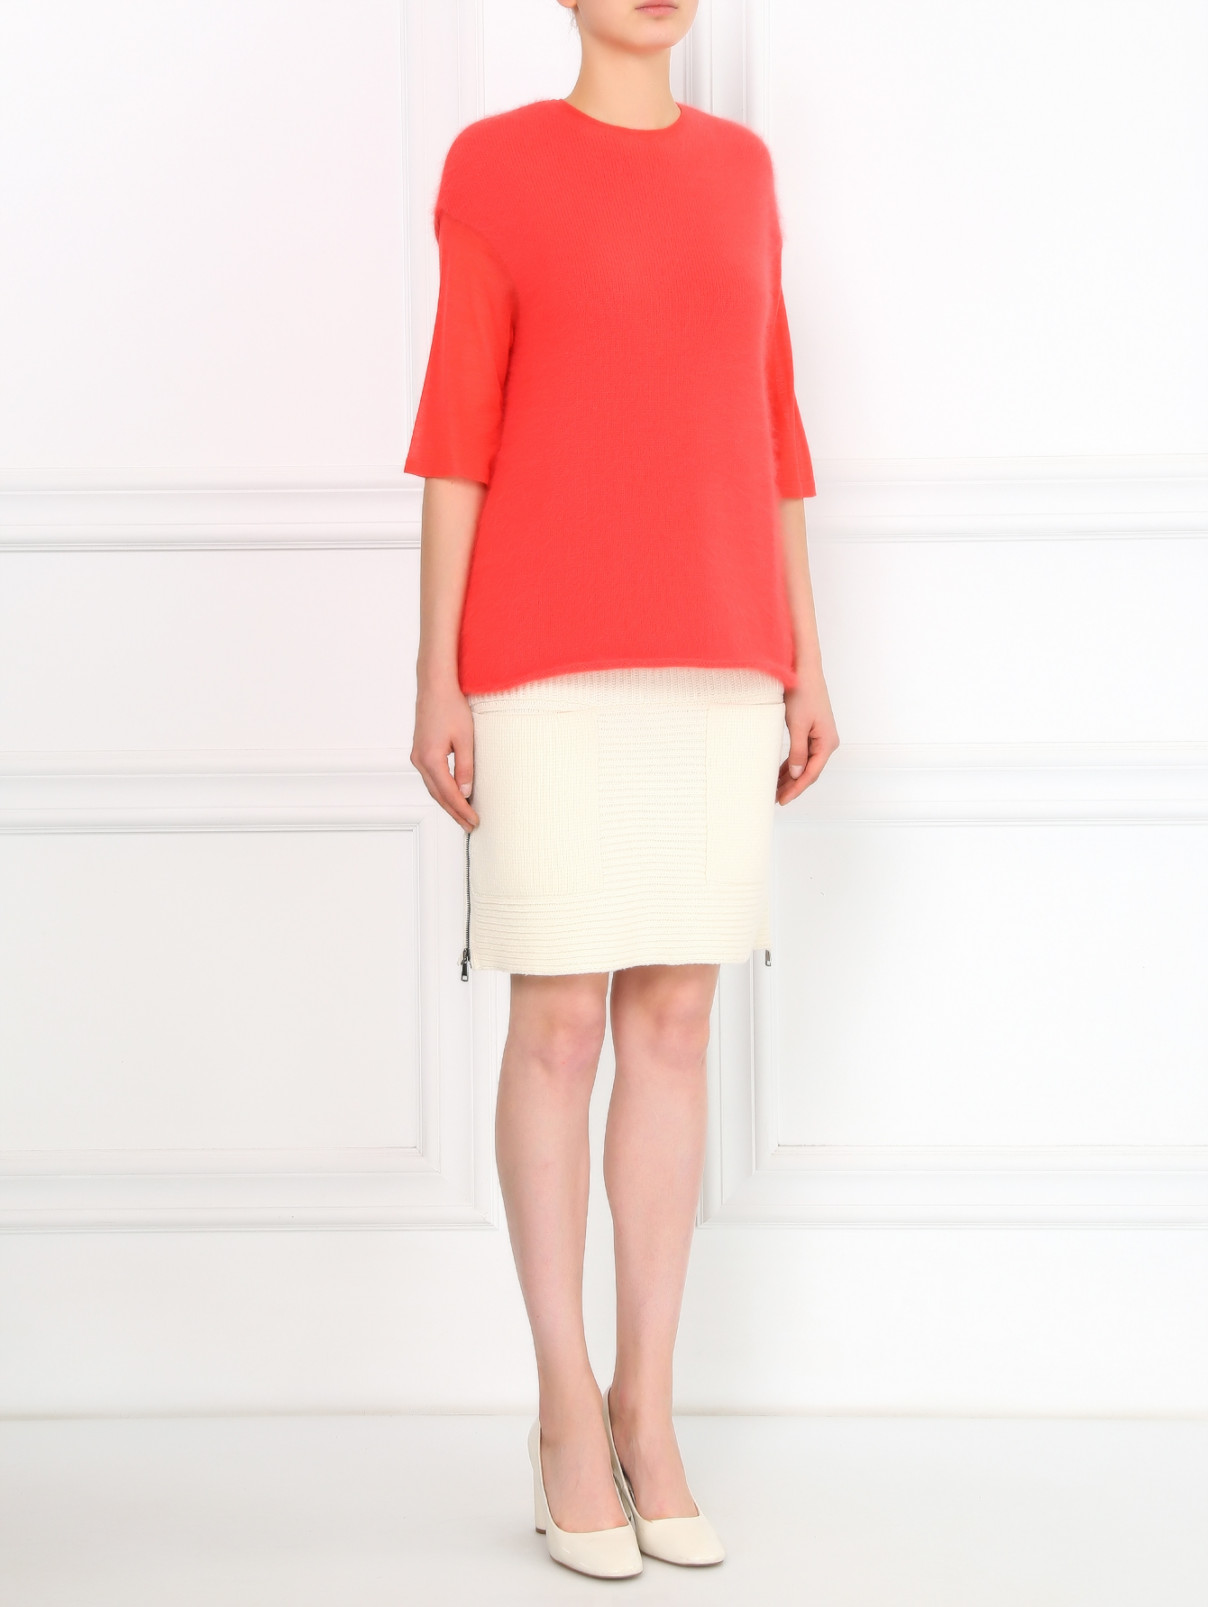 Трикотажная юбка из шерсти и кашемира с накладными карманами Aimo Richly  –  Модель Общий вид  – Цвет:  Бежевый